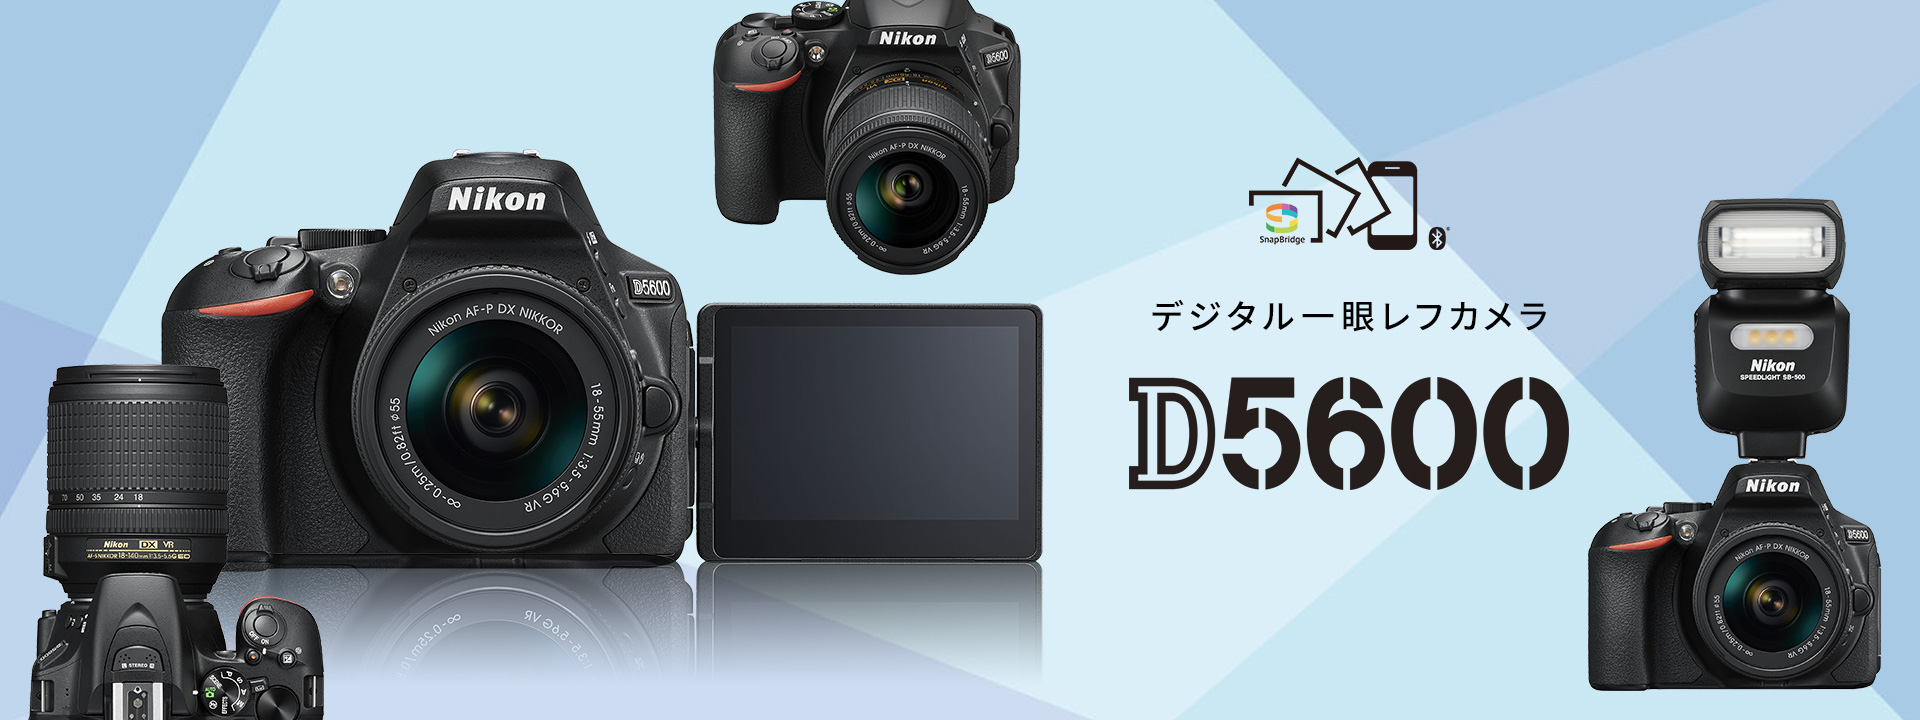 D5600 - 概要 | 一眼レフカメラ | ニコンイメージング